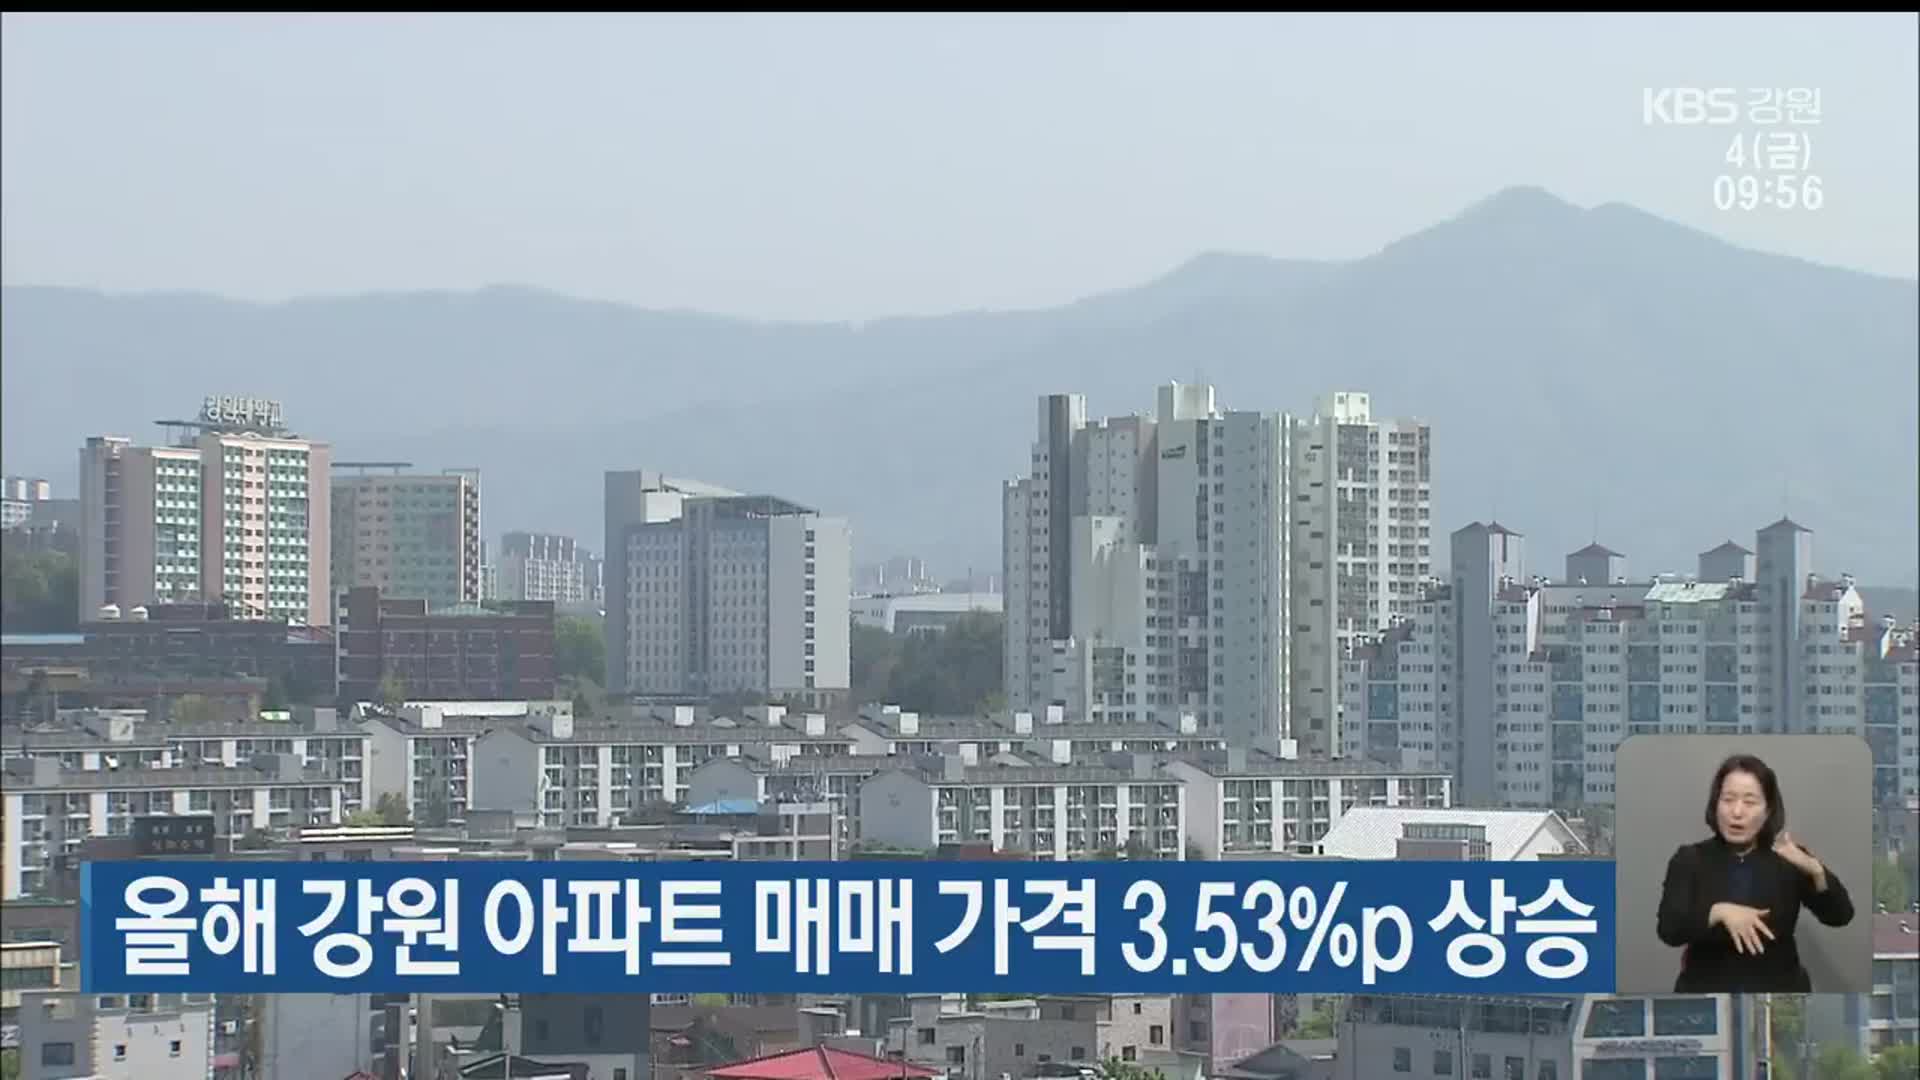 올해 강원 아파트 매매 가격 3.53%p 상승